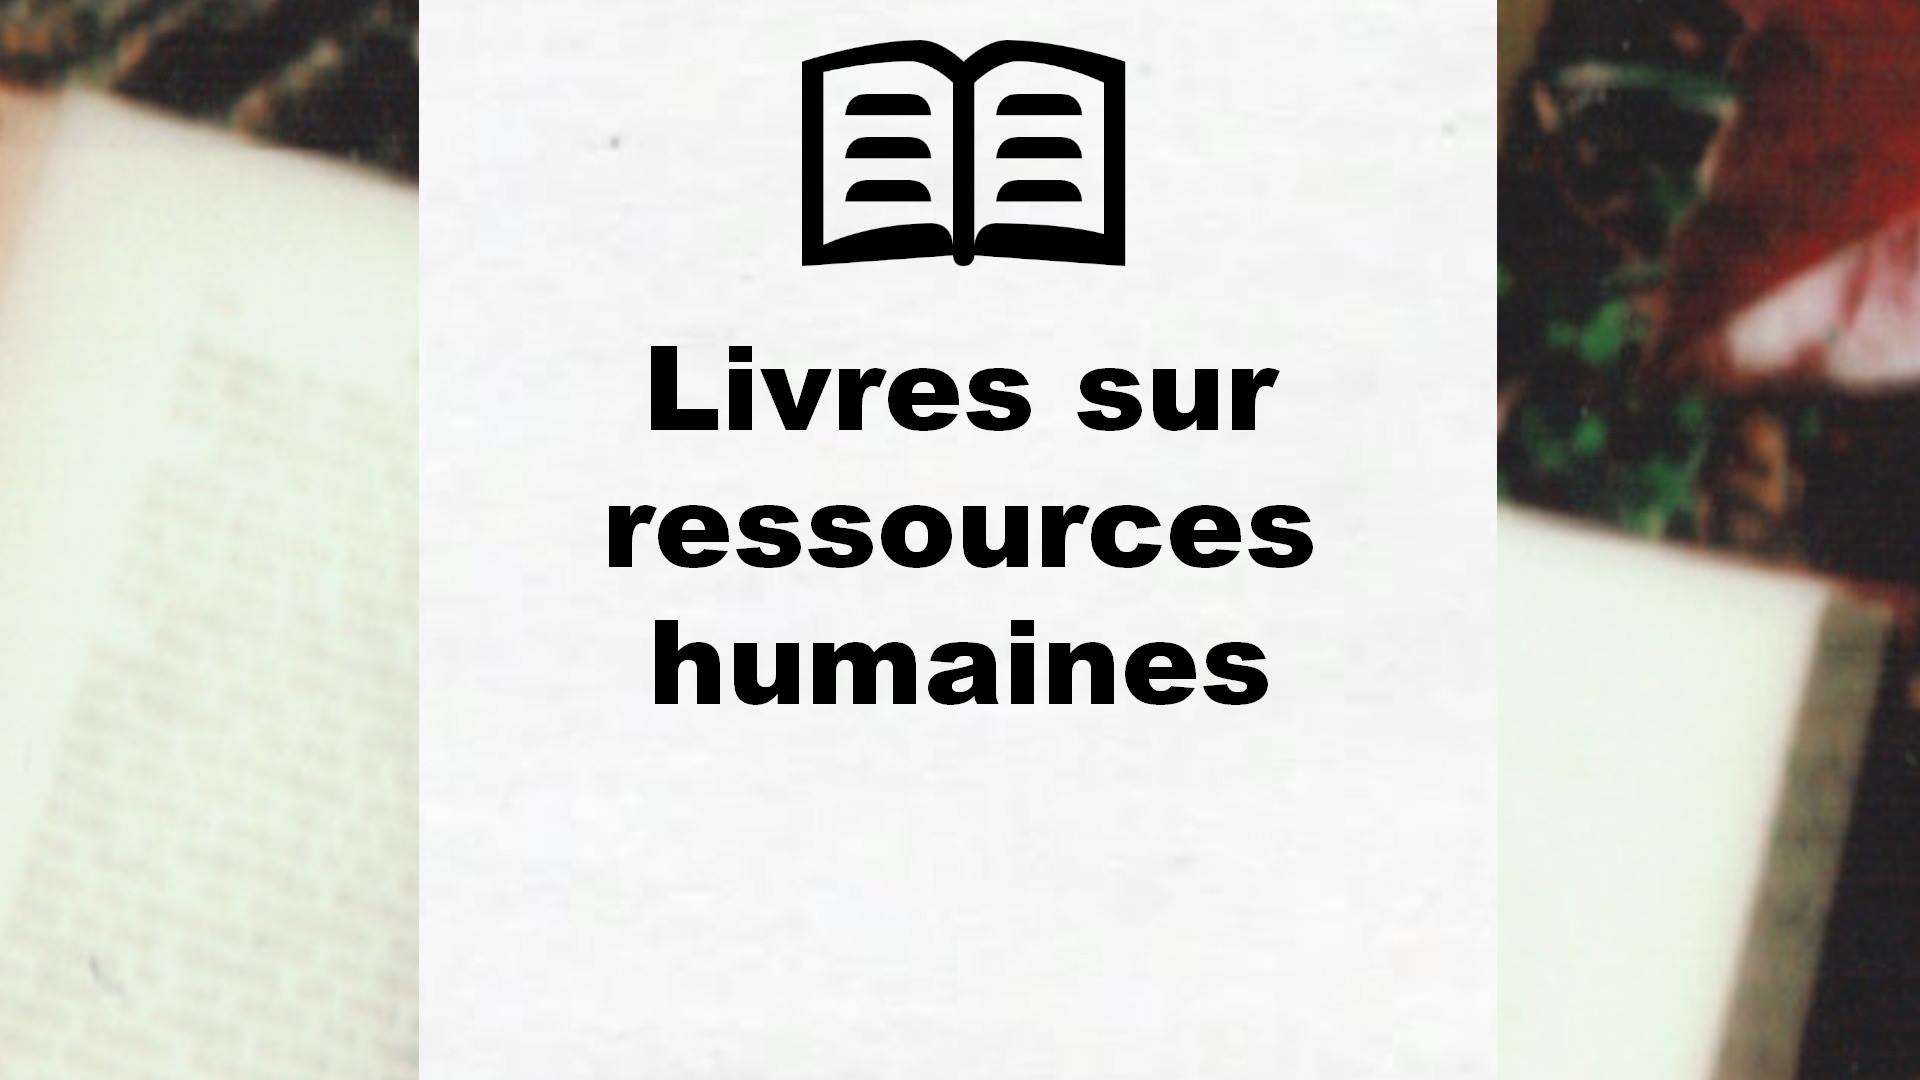 Livres sur ressources humaines